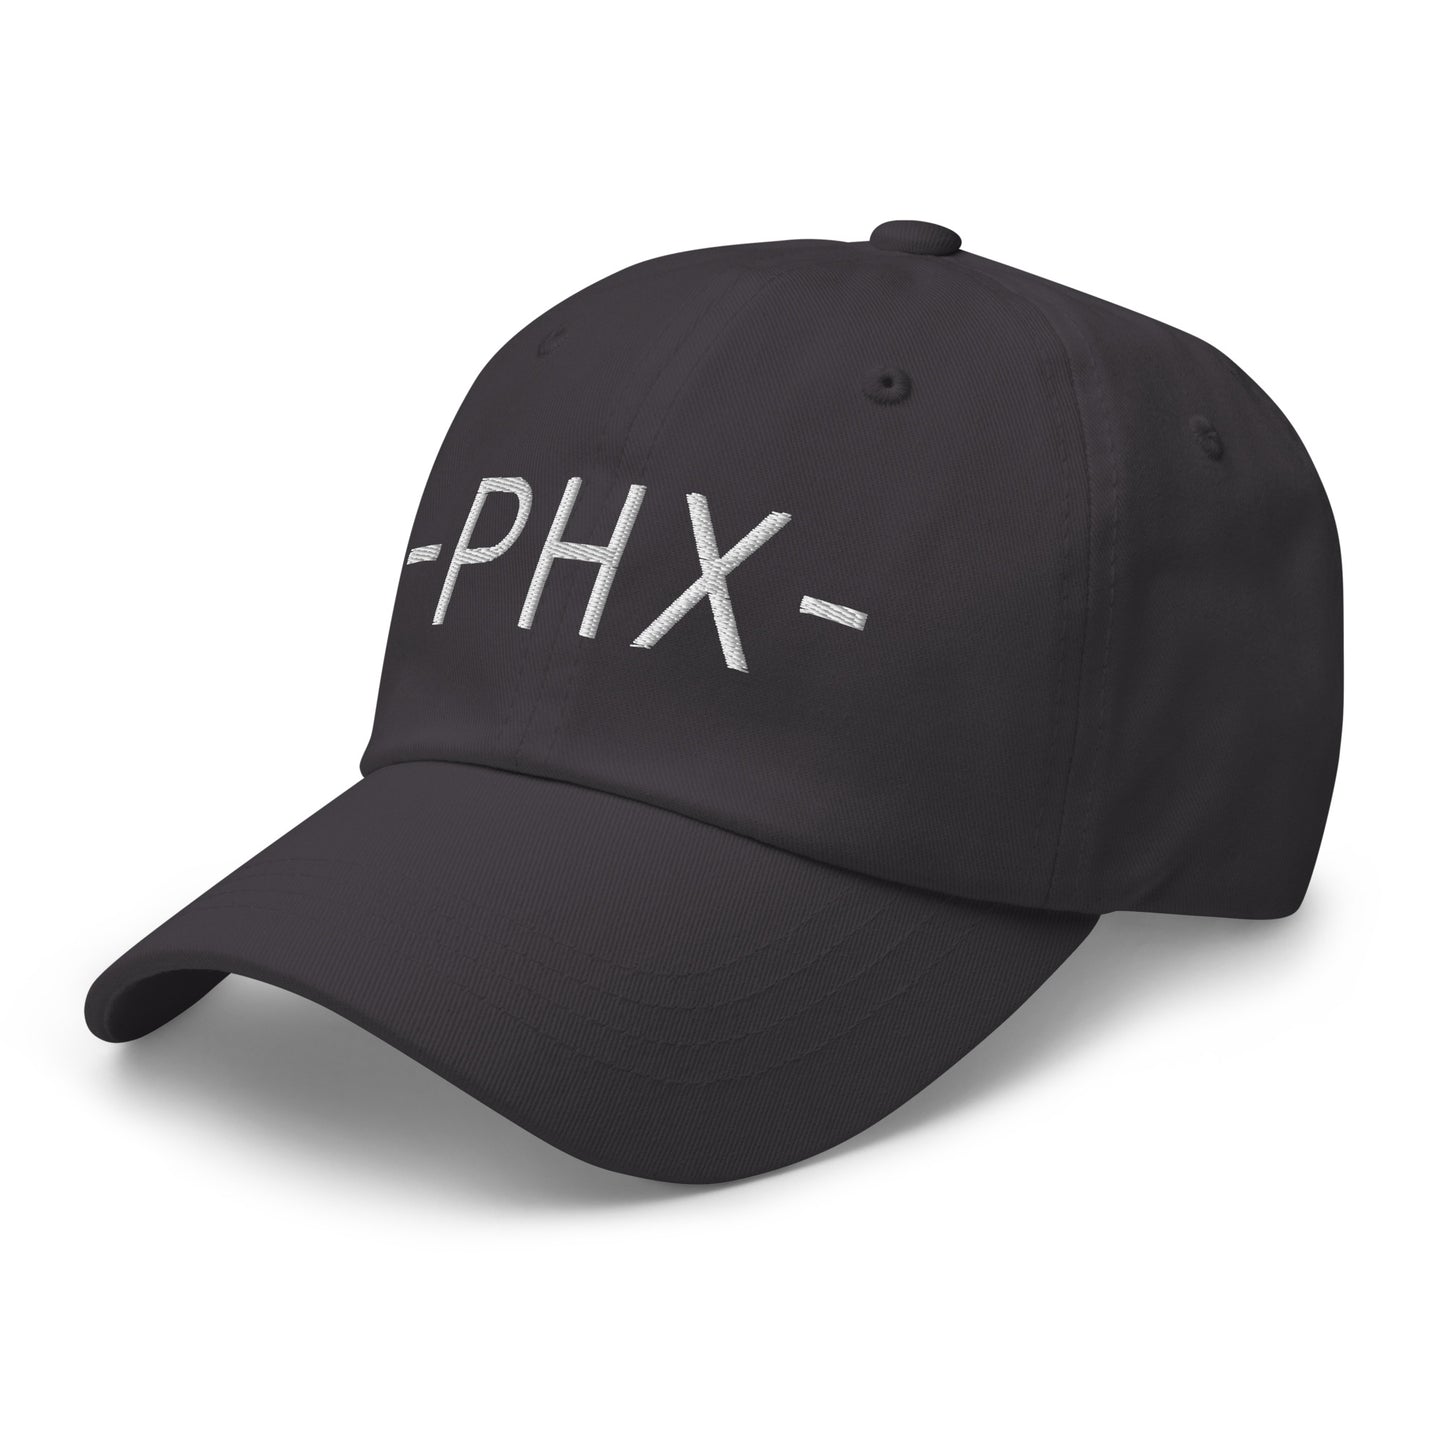 Souvenir Baseball Cap - White • PHX Phoenix • YHM Designs - Image 20